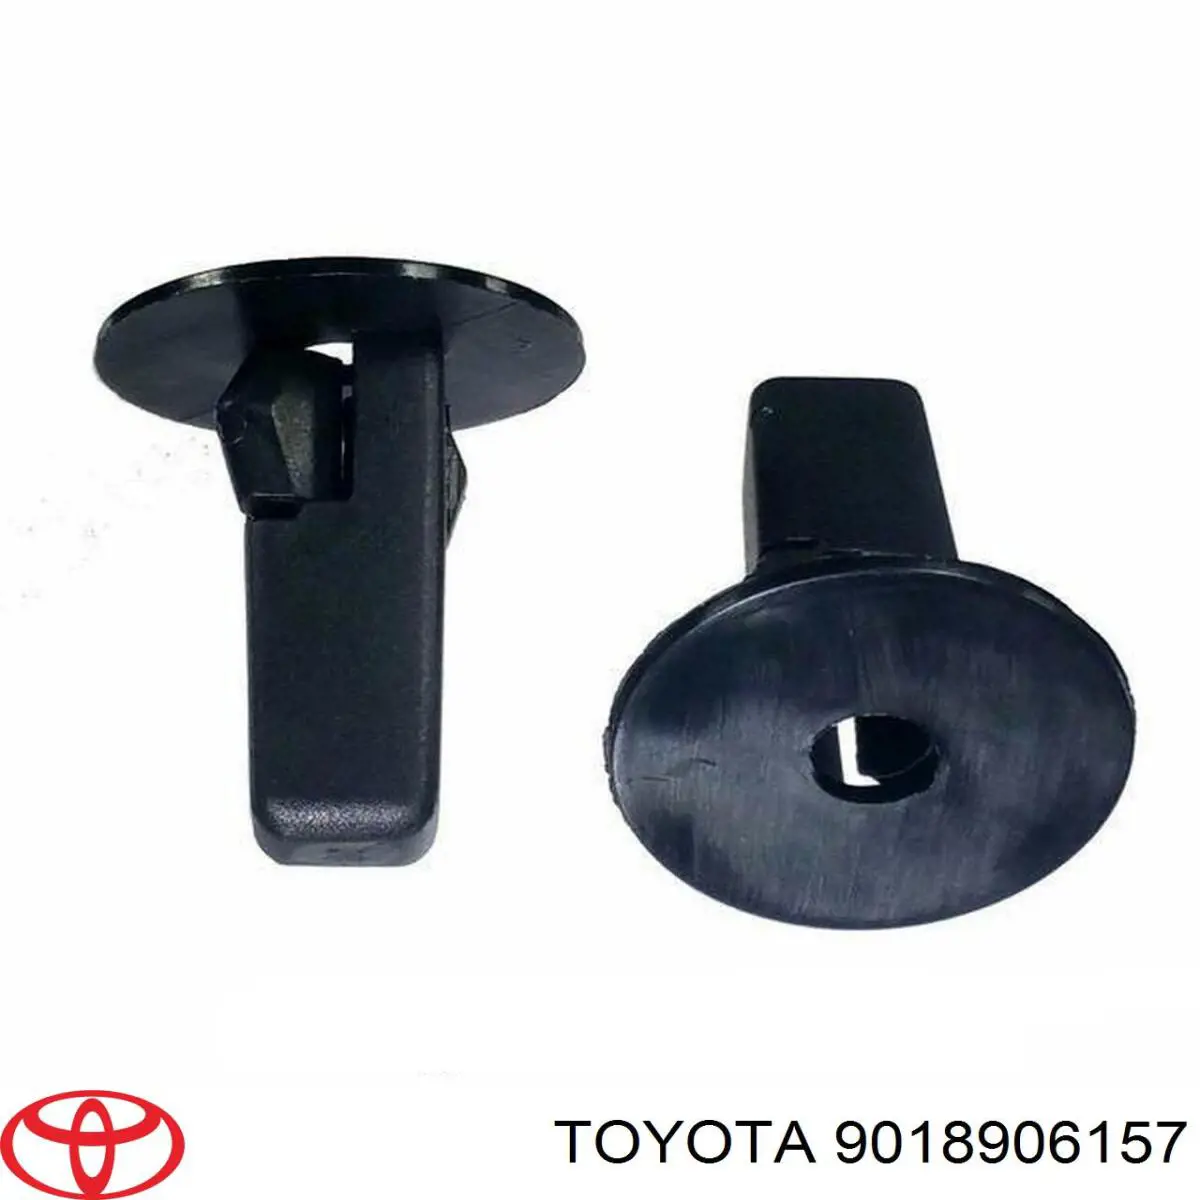 Пистон (клип) крепления брызговика на Toyota Corolla VERSO 